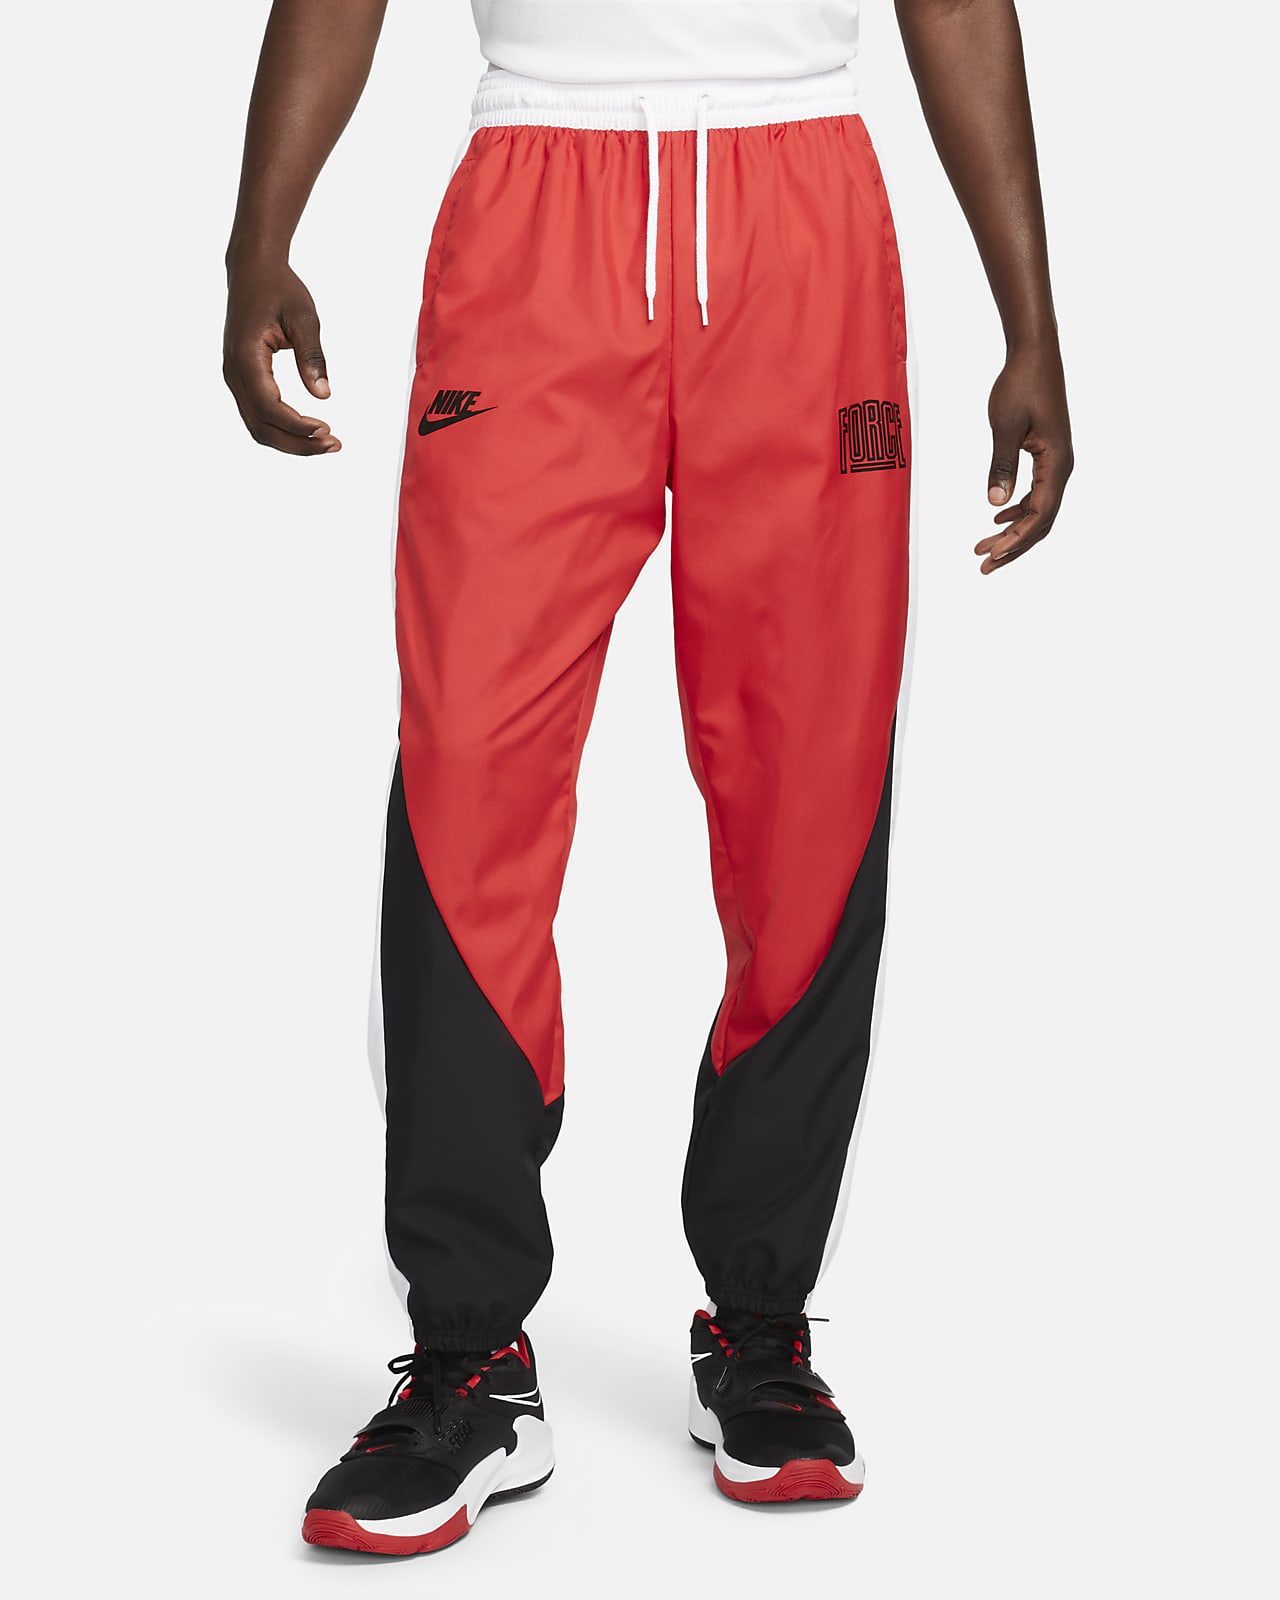 Pants de básquetbol para hombre Nike Starting 5